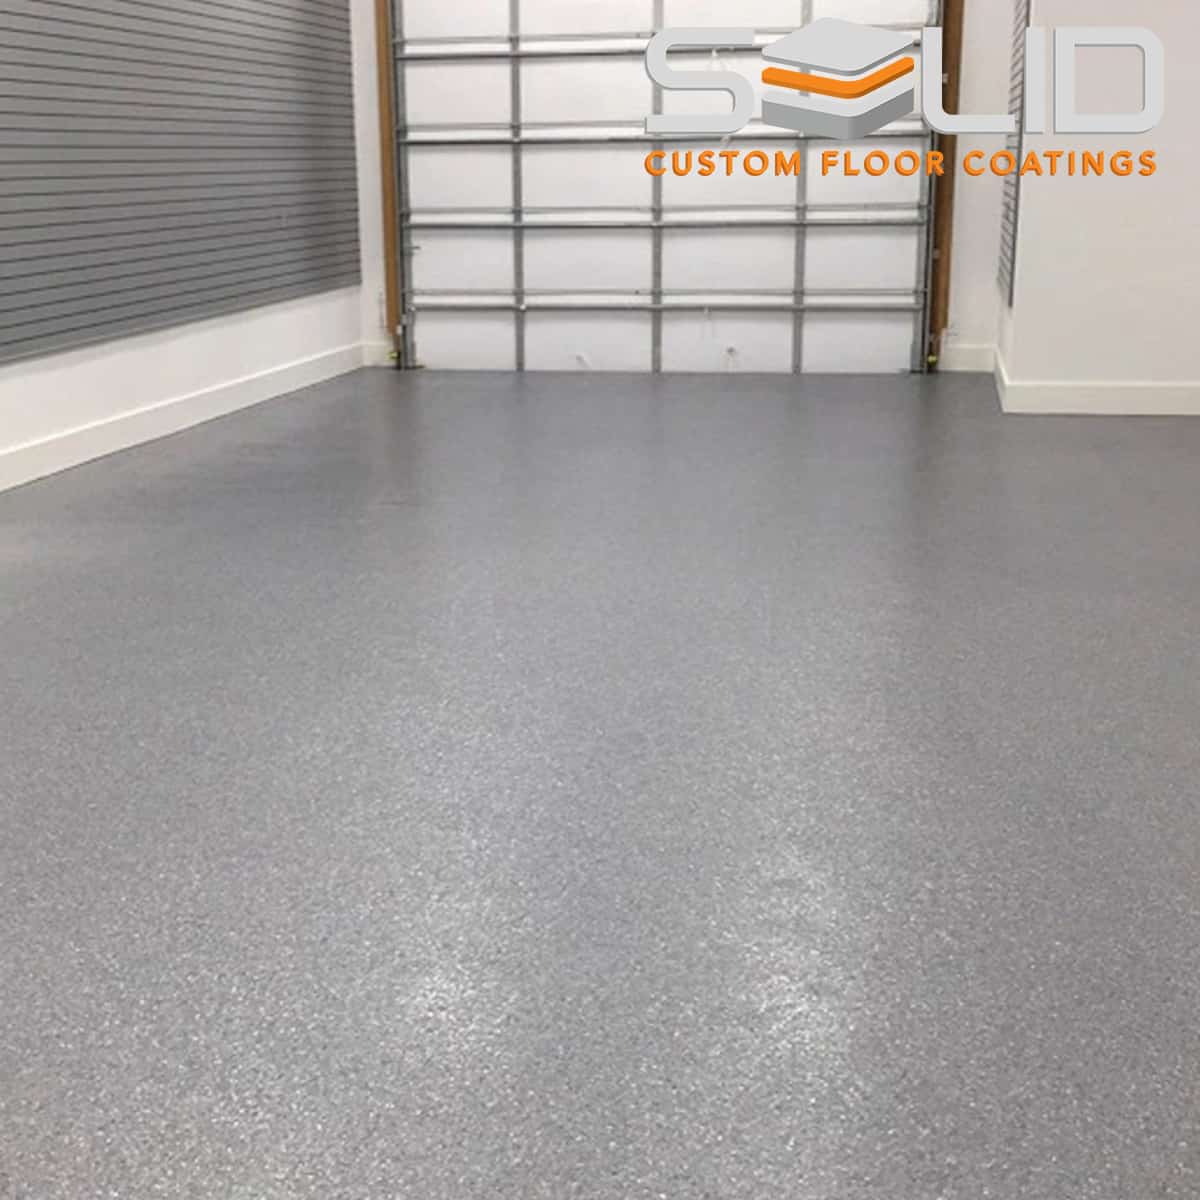 Epoxy Garage Floor Coatings - Ogden, UT